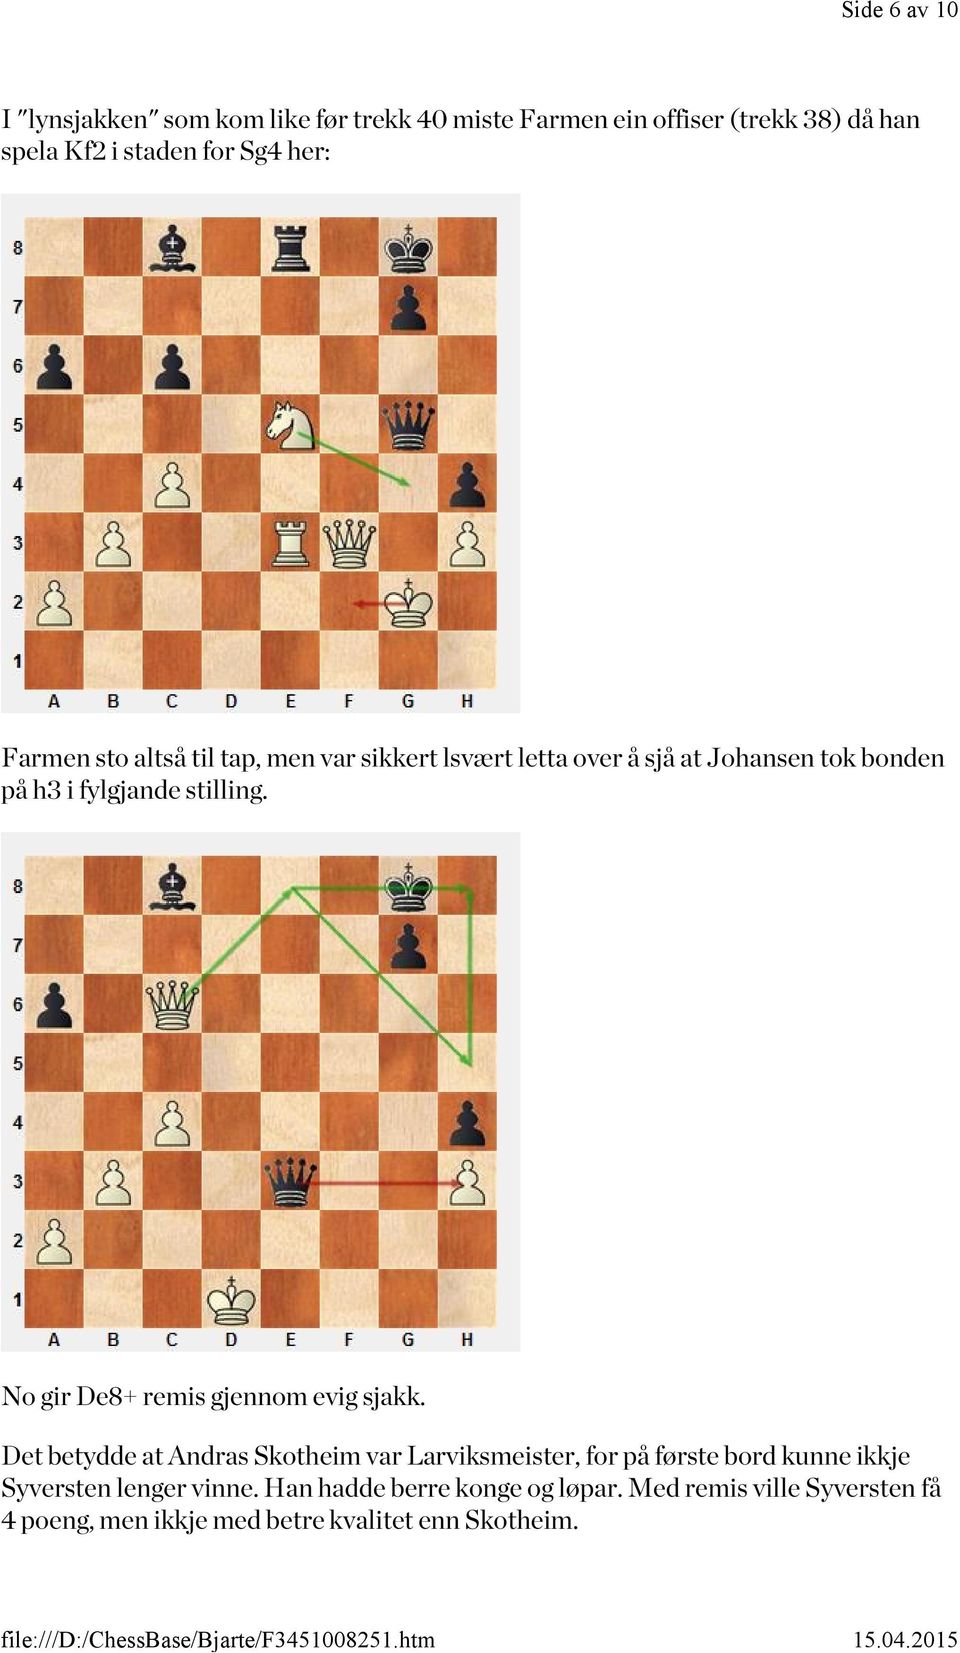 No gir De8+ remis gjennom evig sjakk.